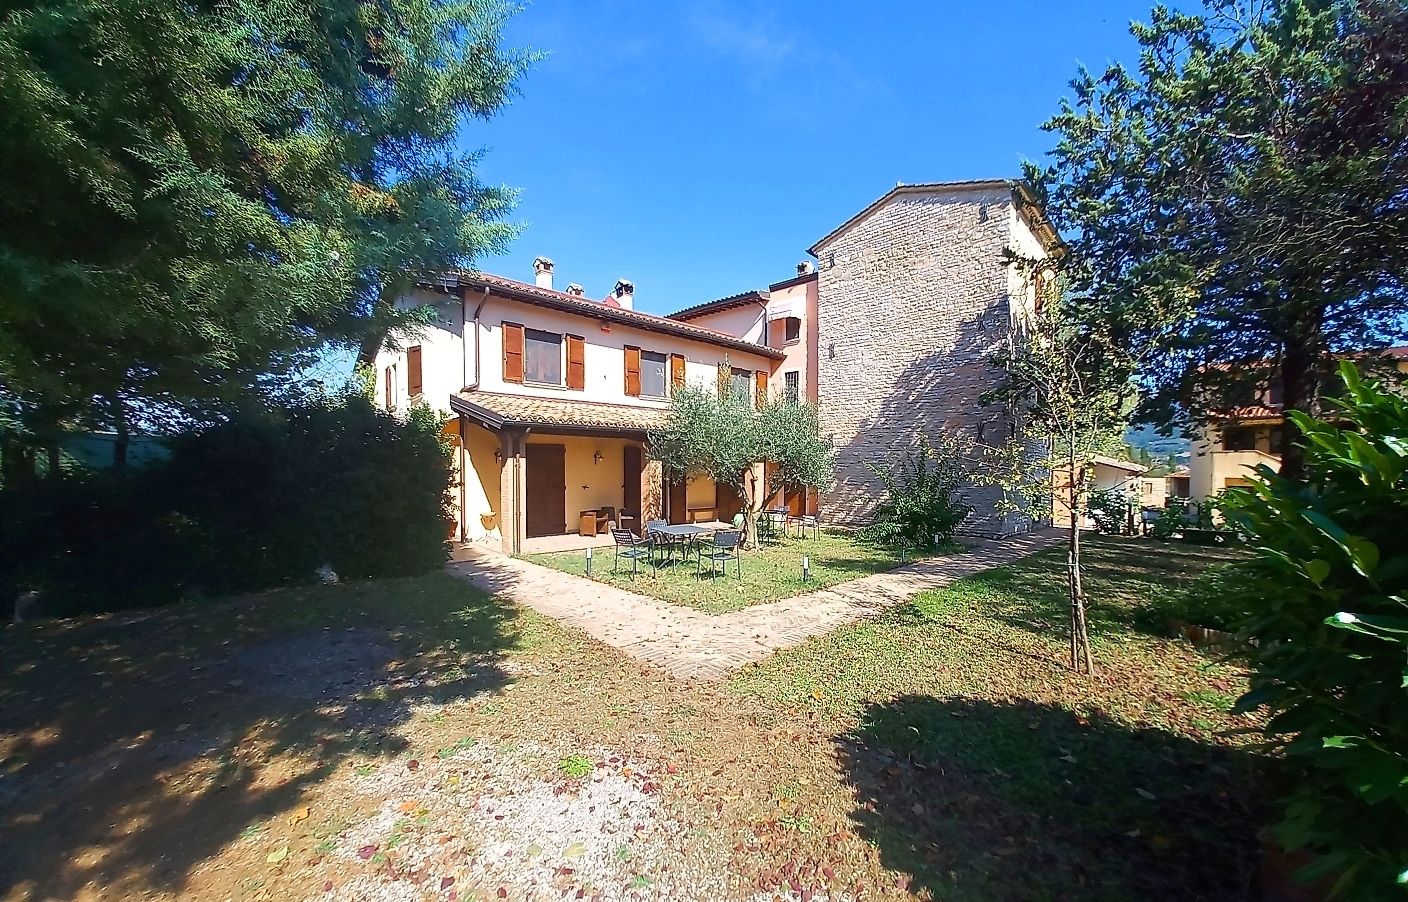 For sale cottage in quiet zone Nocera Umbra Umbria